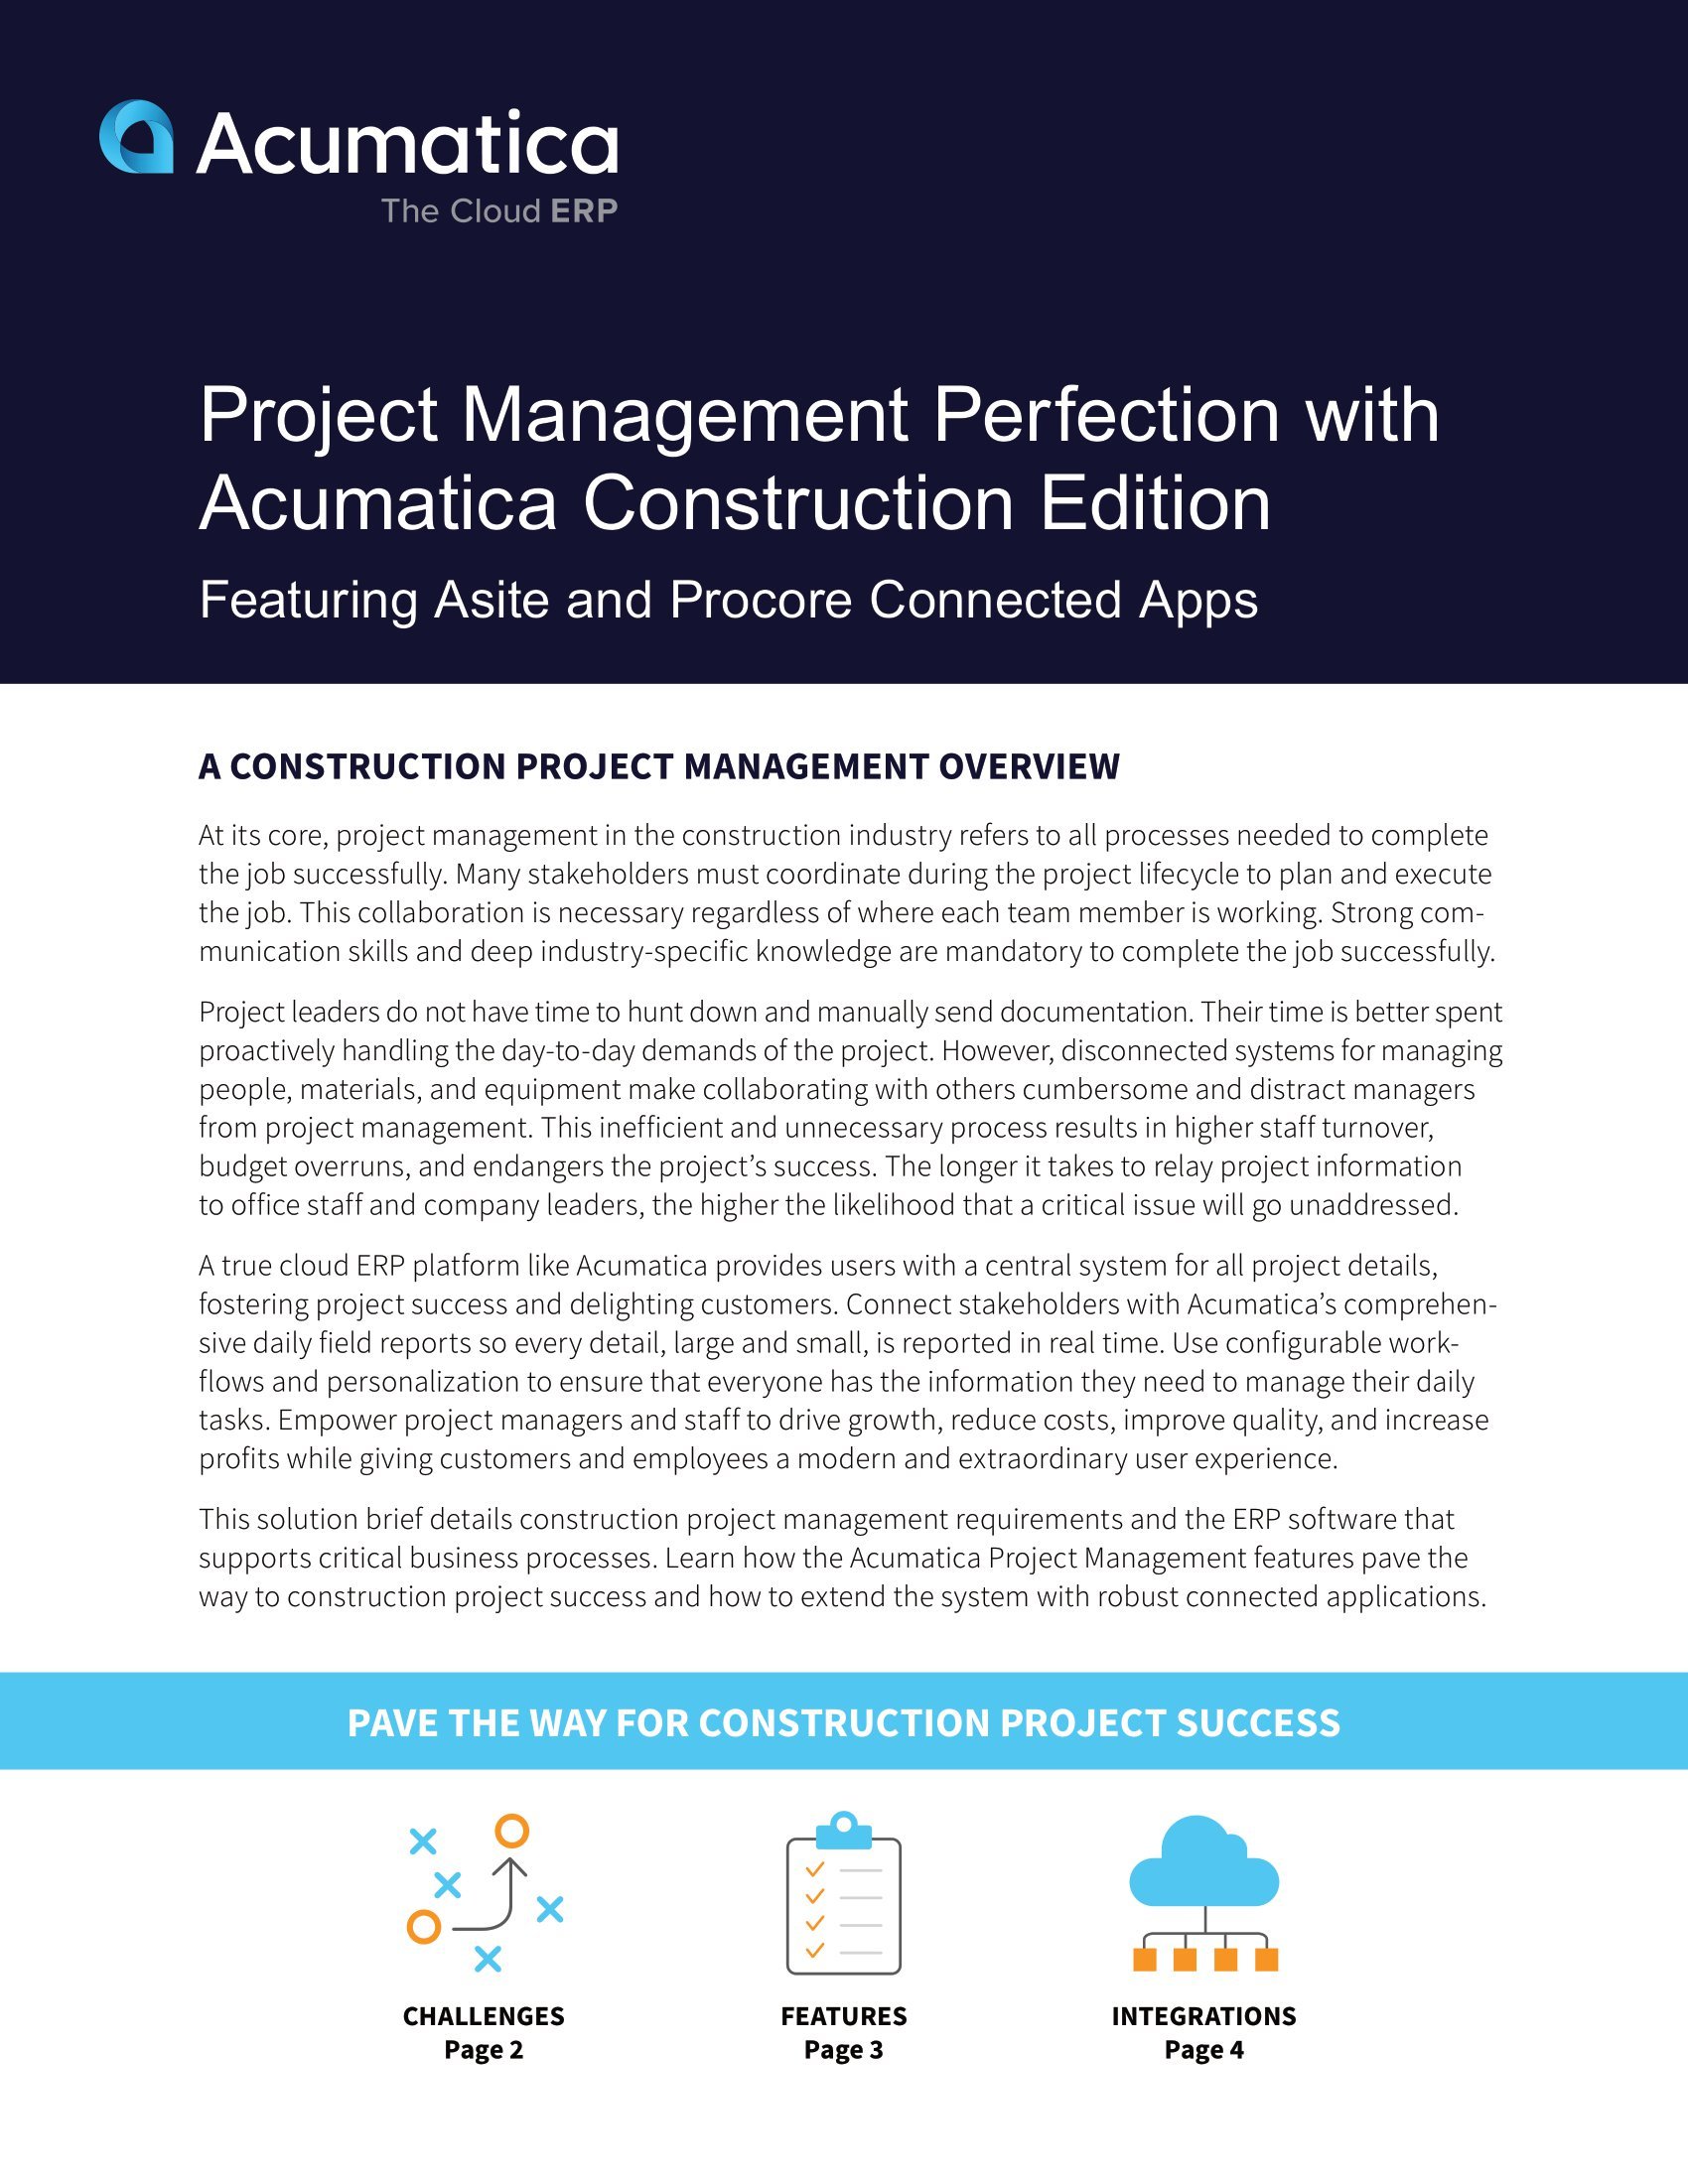 Améliorer la gestion de projet de construction avec Acumatica Construction Edition